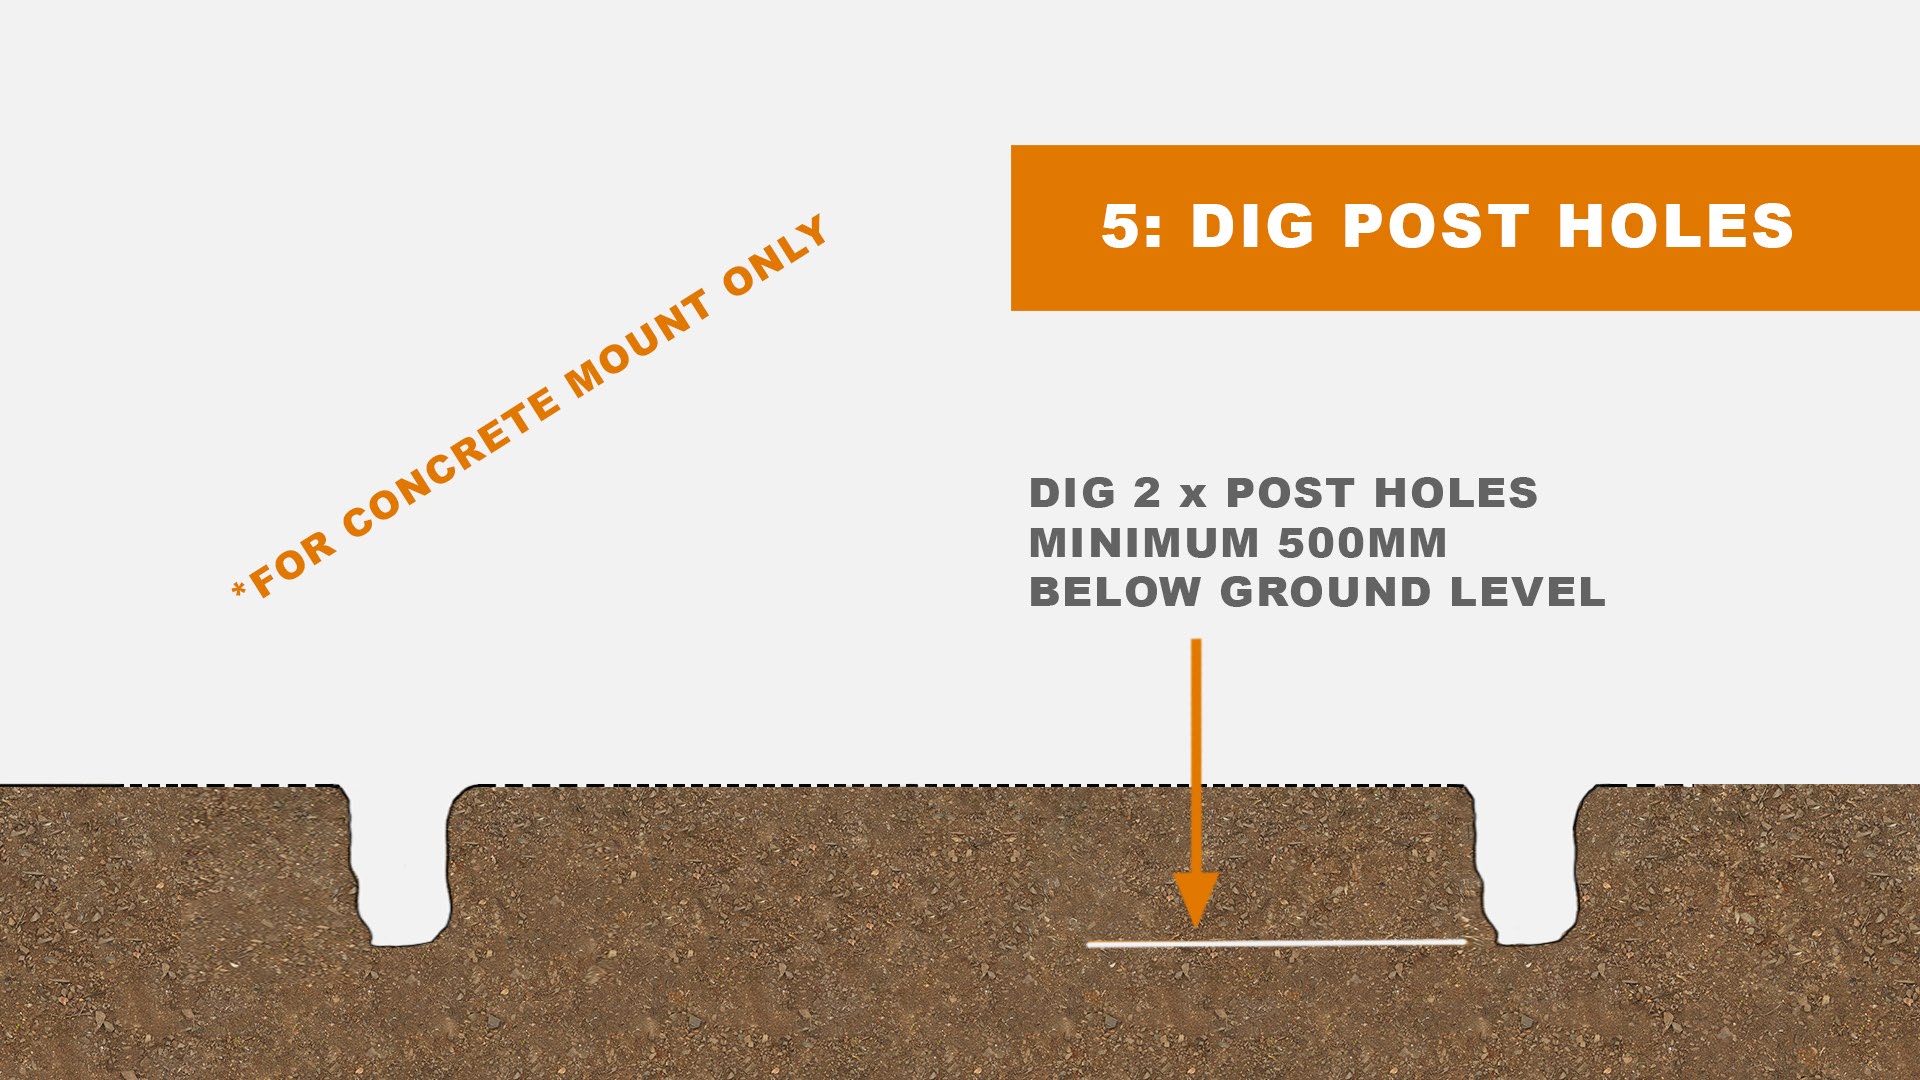 Dig post holes diagram